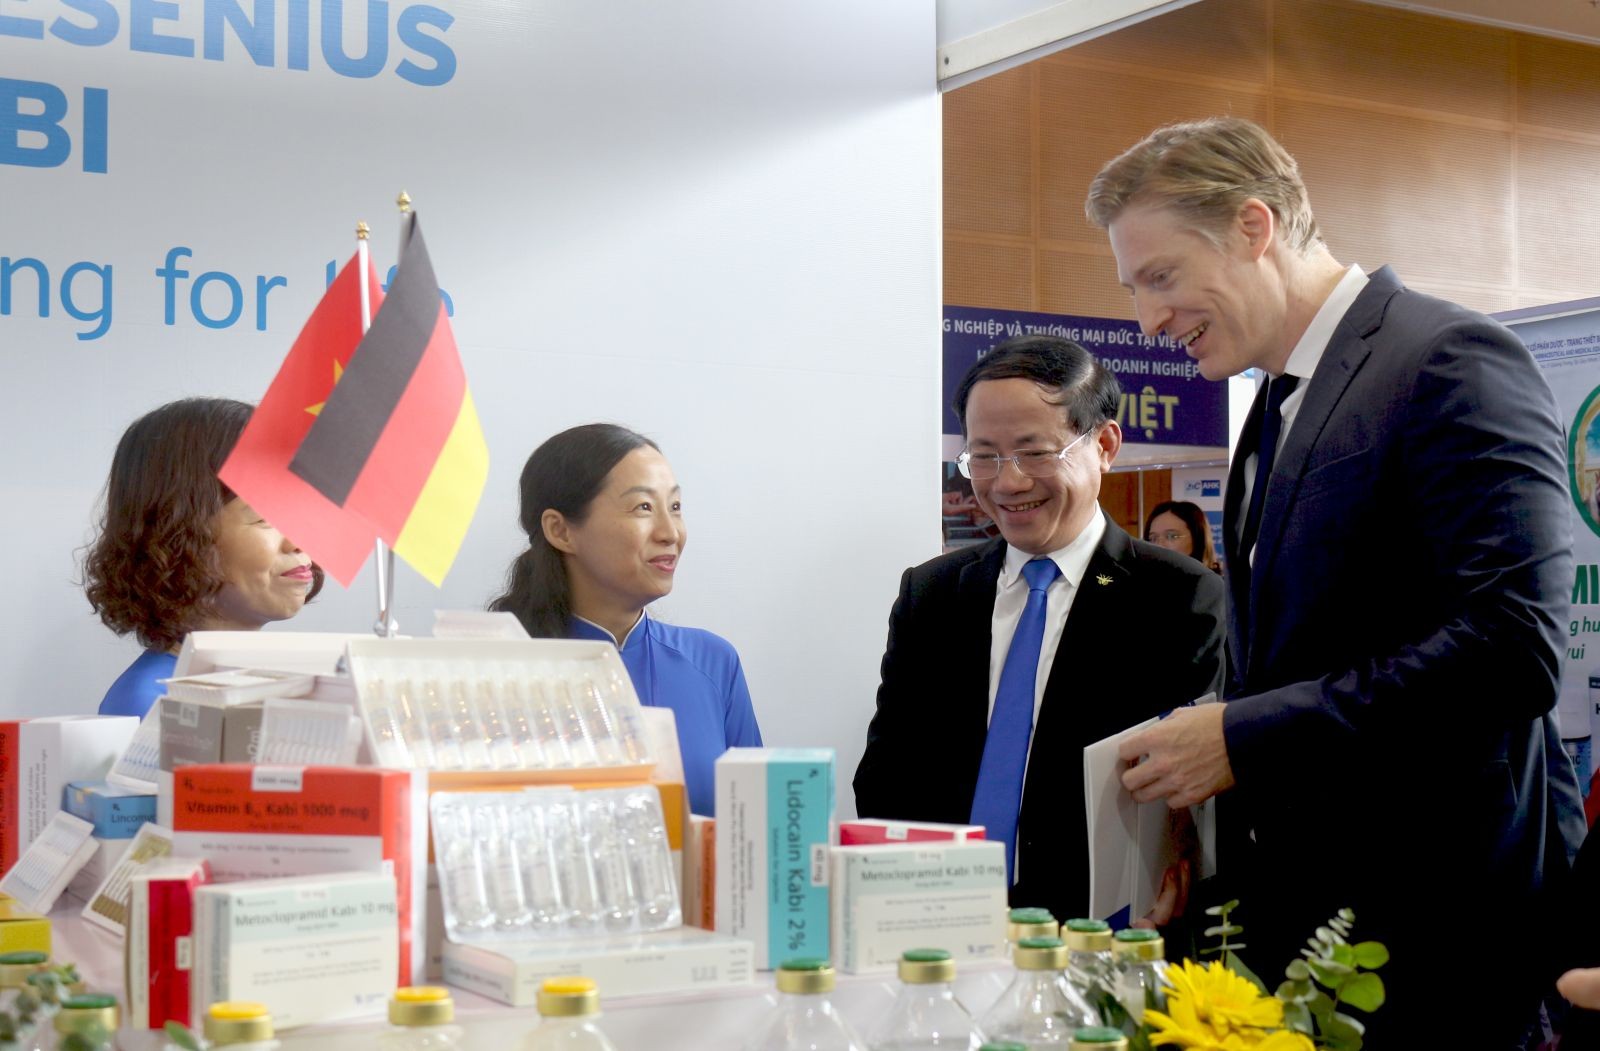 Đại biểu thăm quan gian hàng trưng bày sản phẩm của DN Đức đang hoạt động trên địa bàn tỉnh Bình Định (Ảnh: binhdinh.gov.vn).